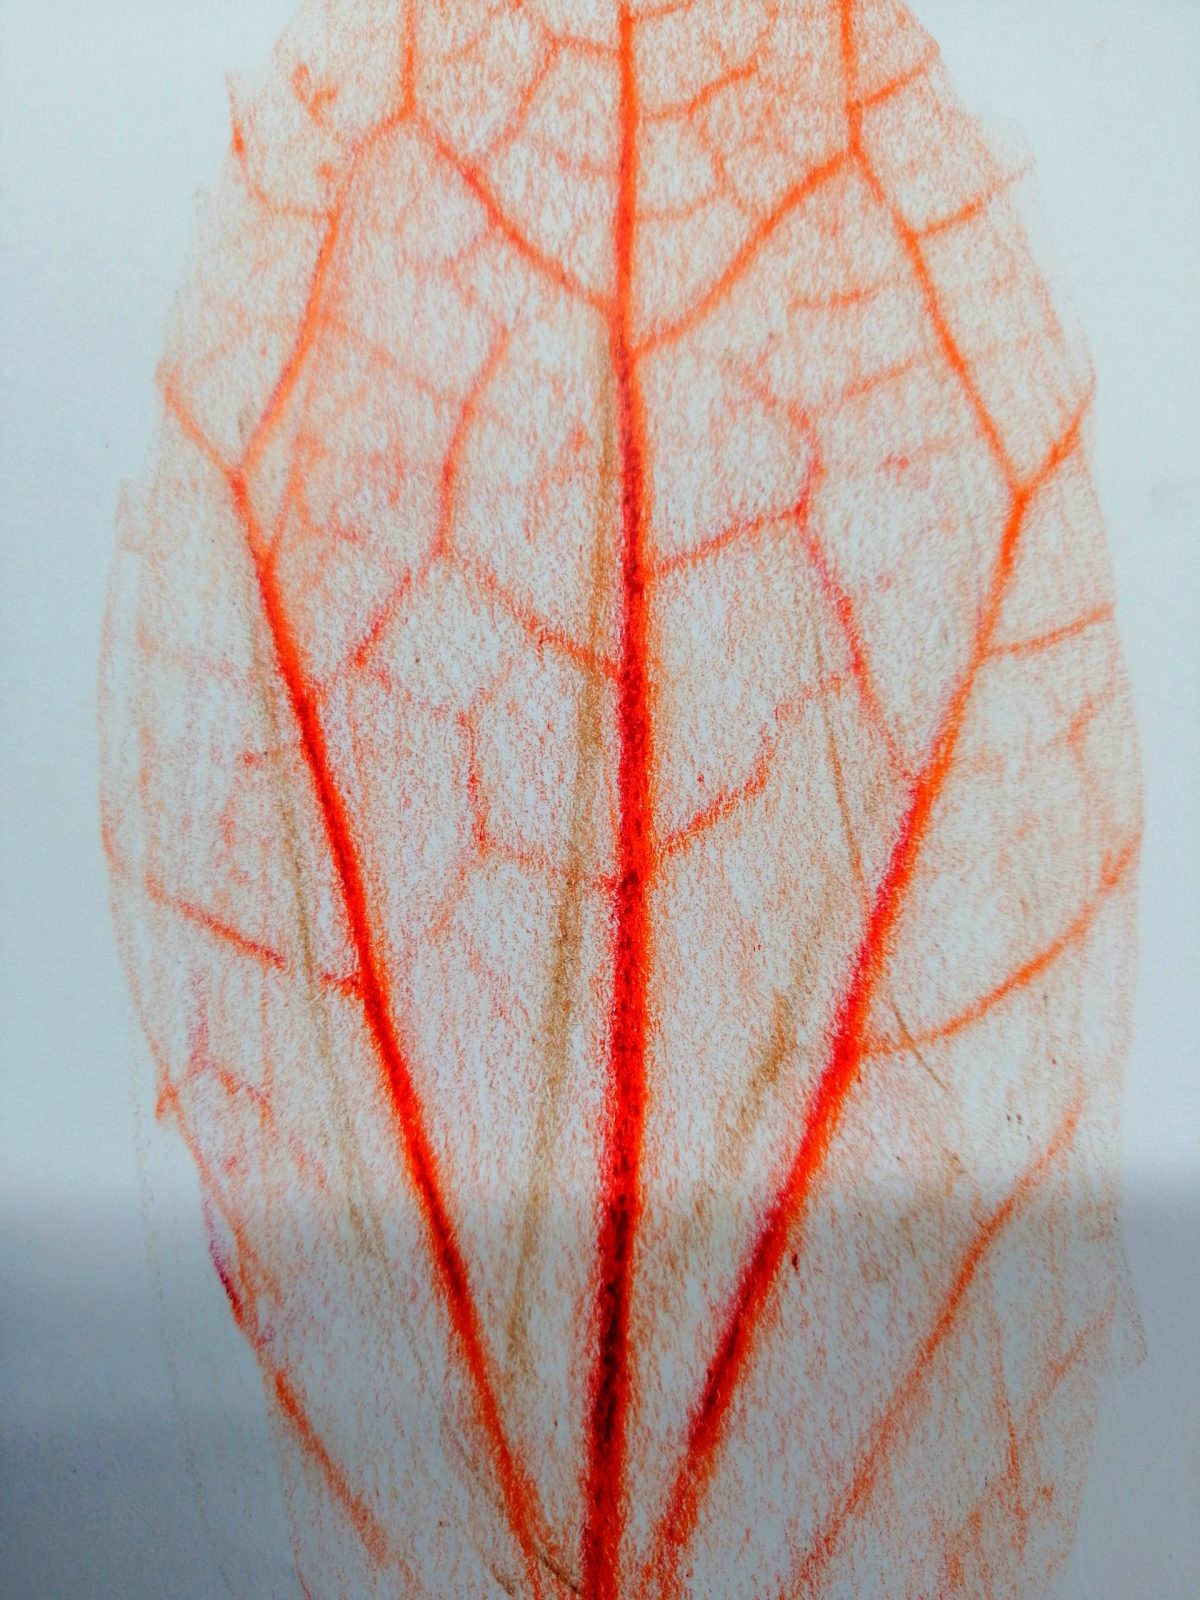 Kompozycja plastyczna struktury fragmentu jesiennego liścia w układzie centralnym. Praca wykonana w technice frotażu z użyciem barw ciepłych.